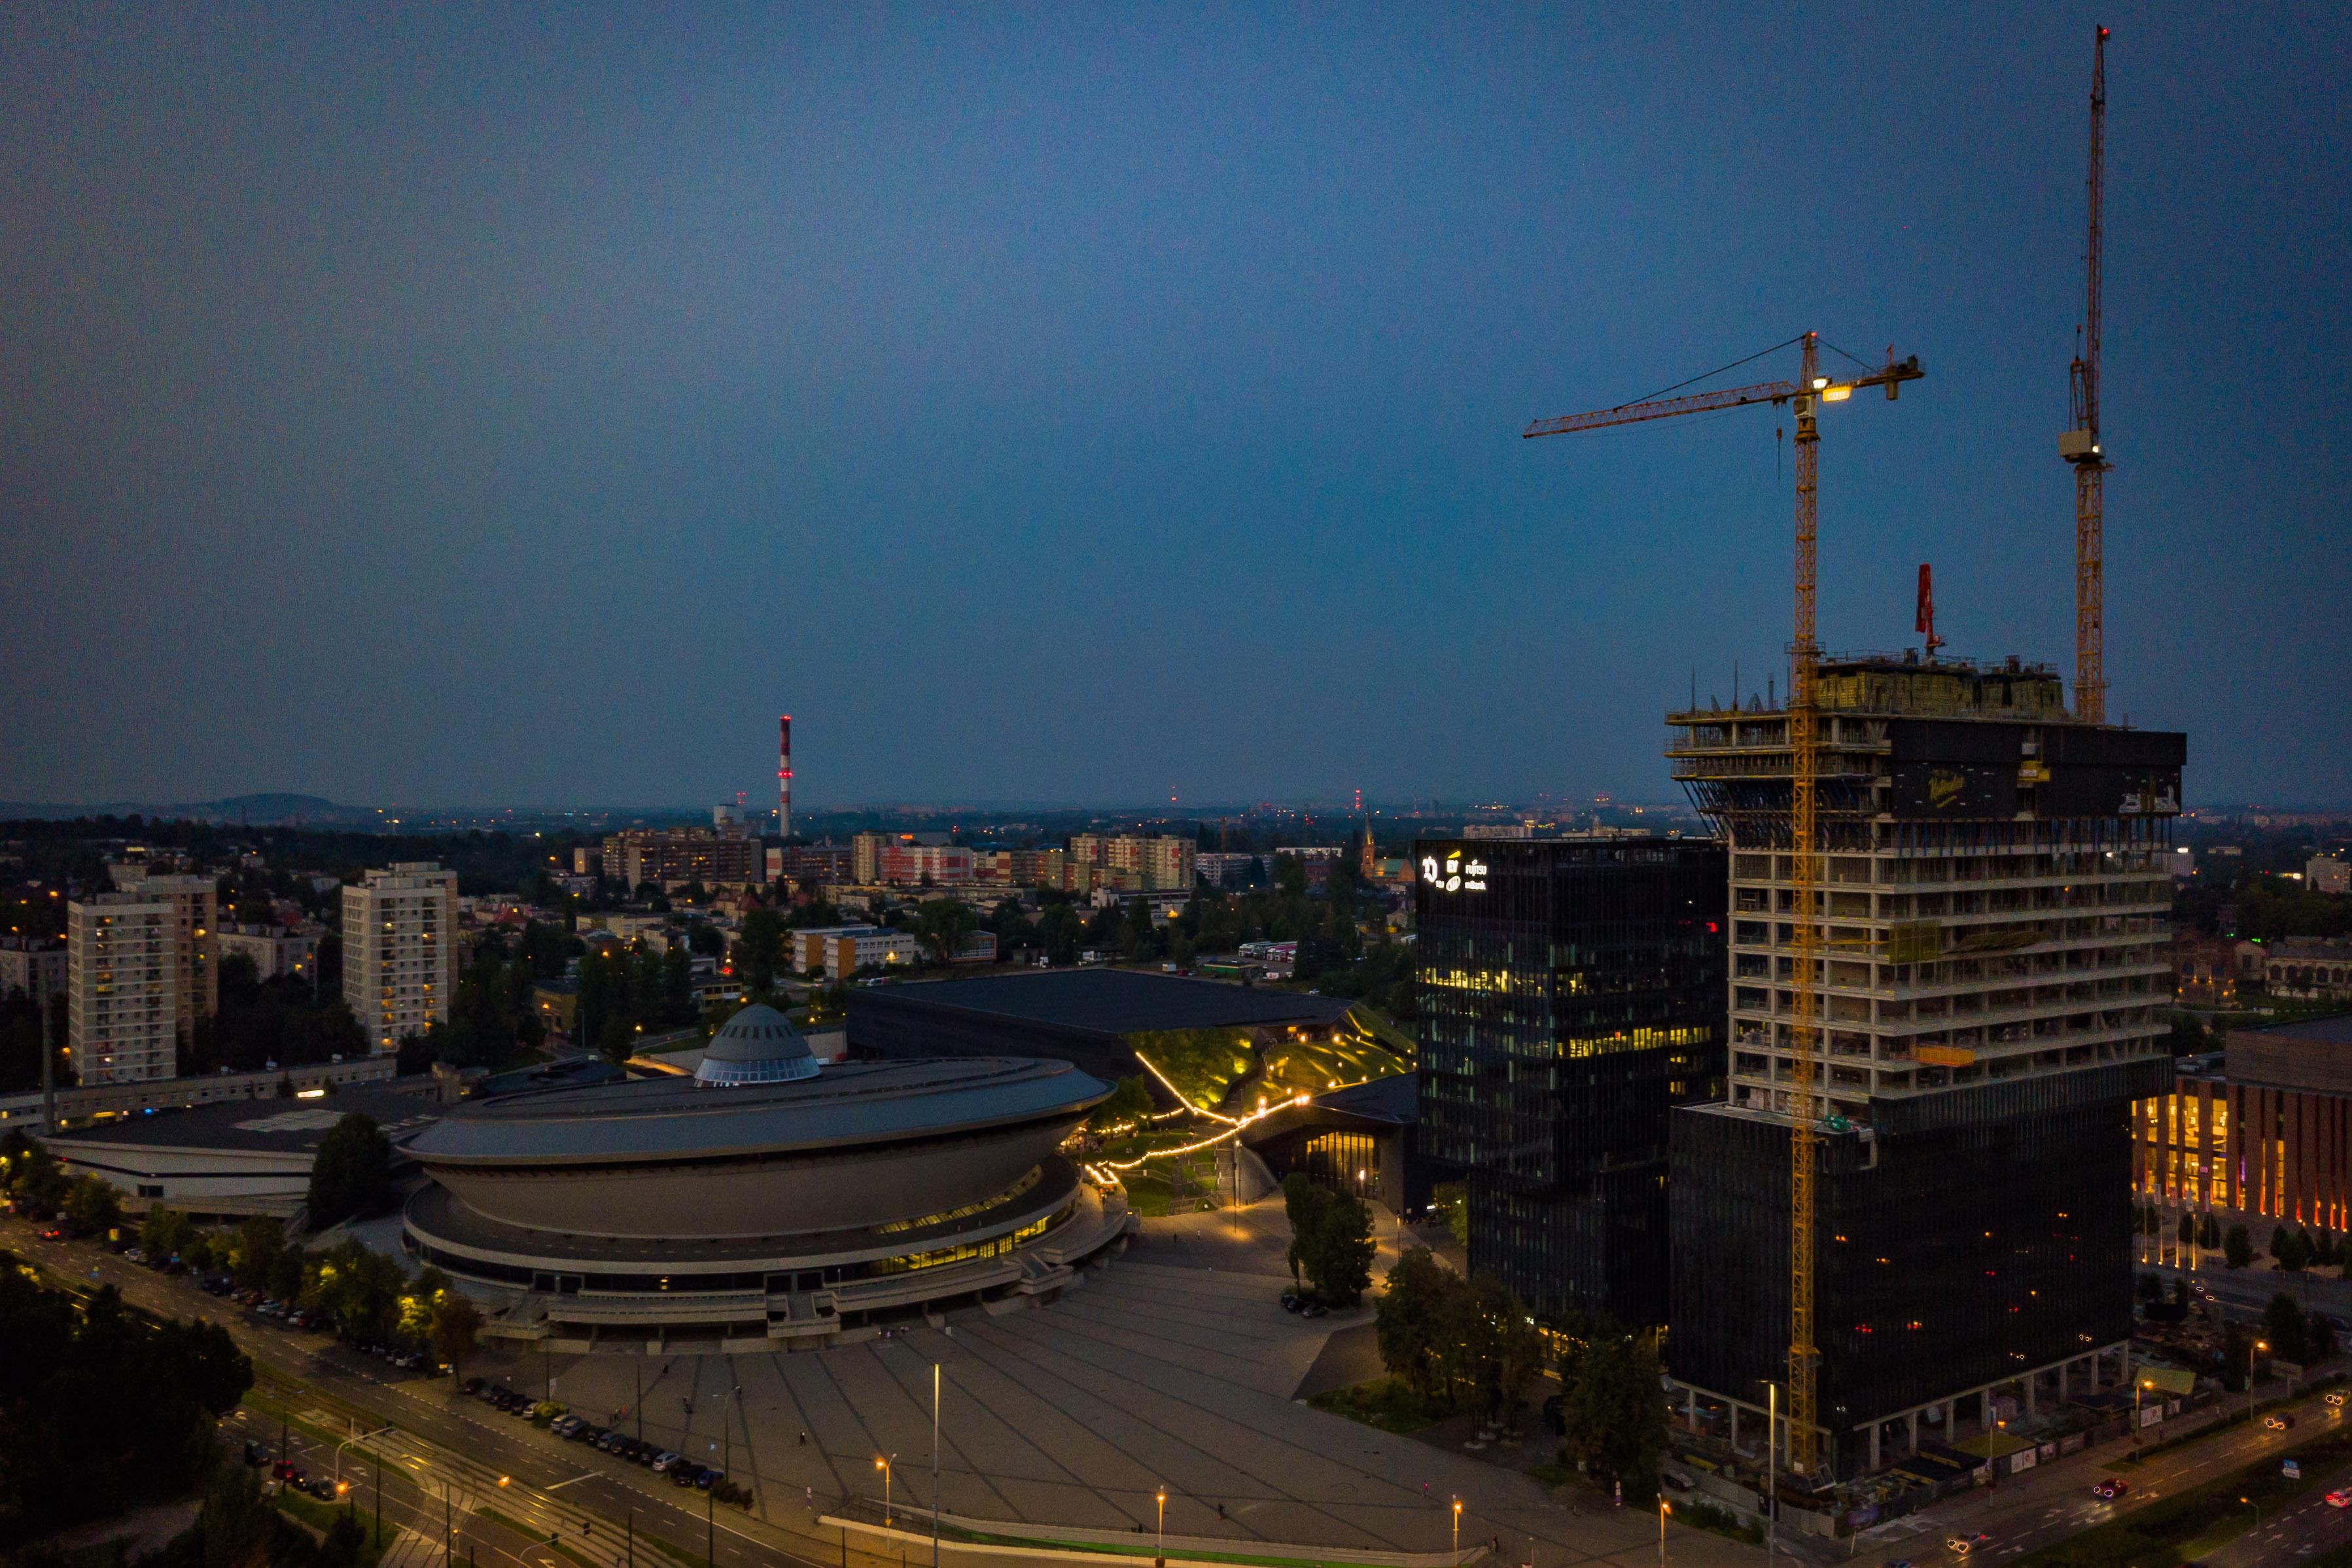 Wieczór w Katowicach.